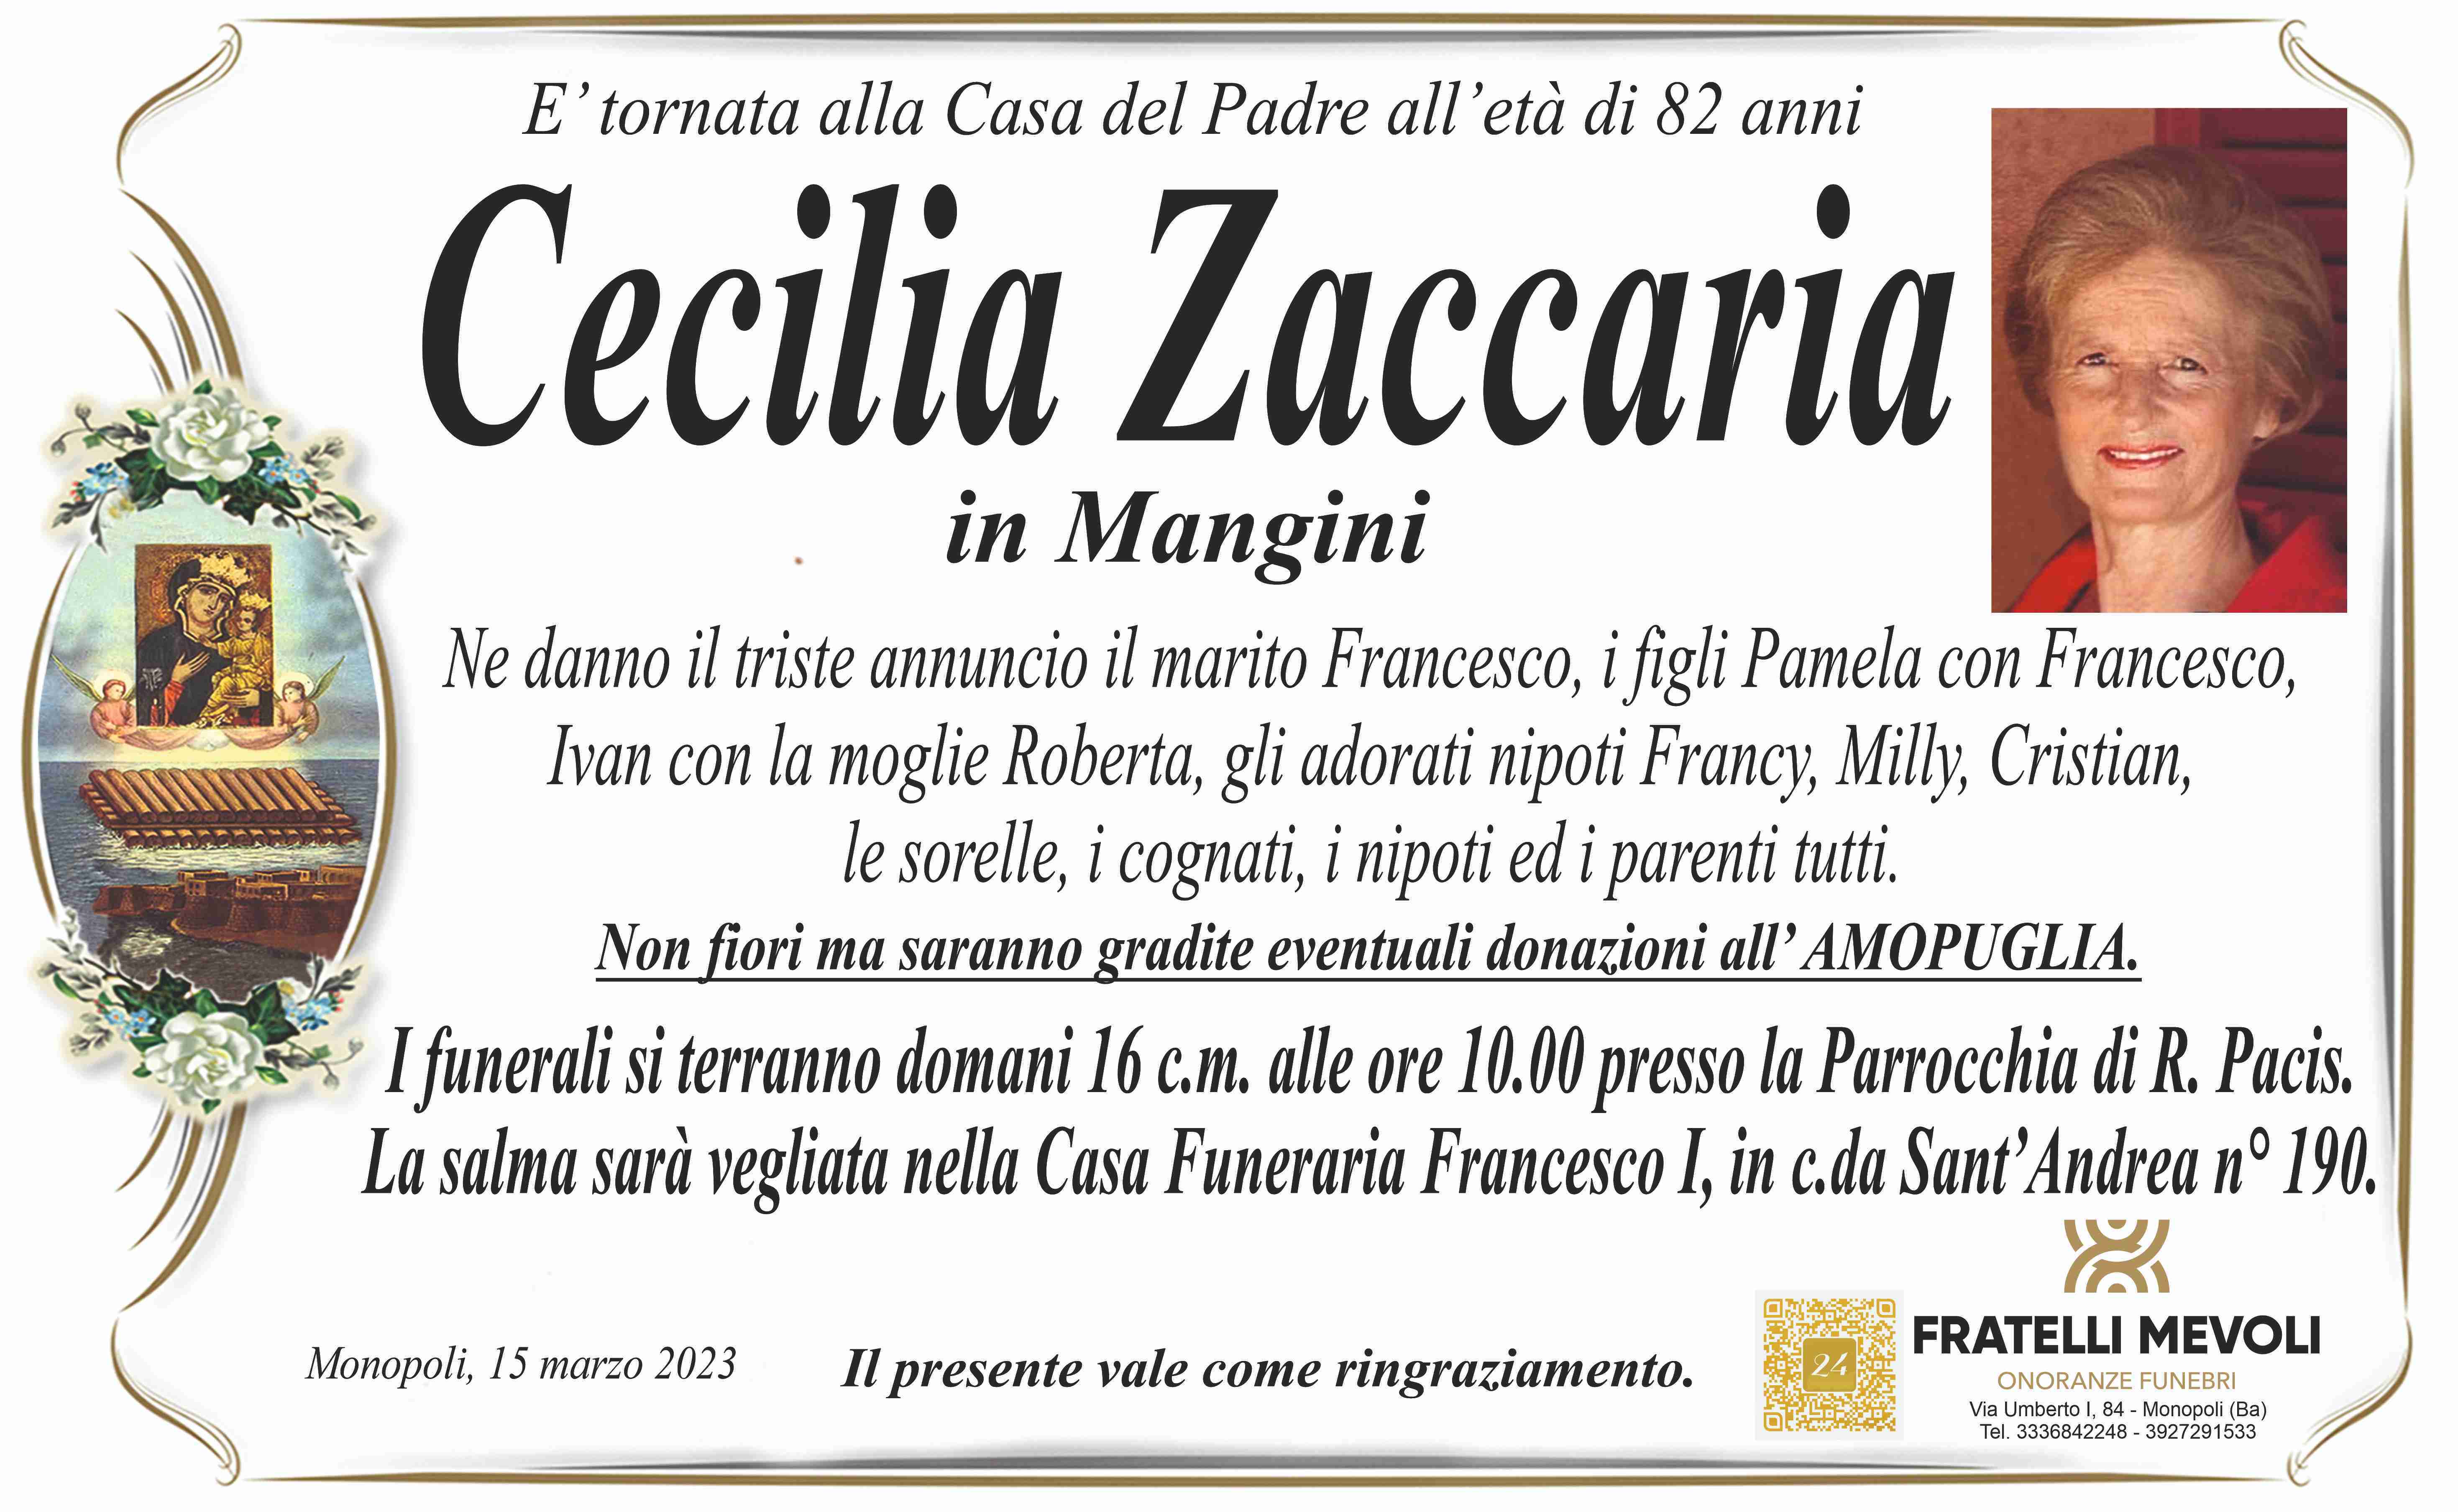 Cecilia Zaccaria